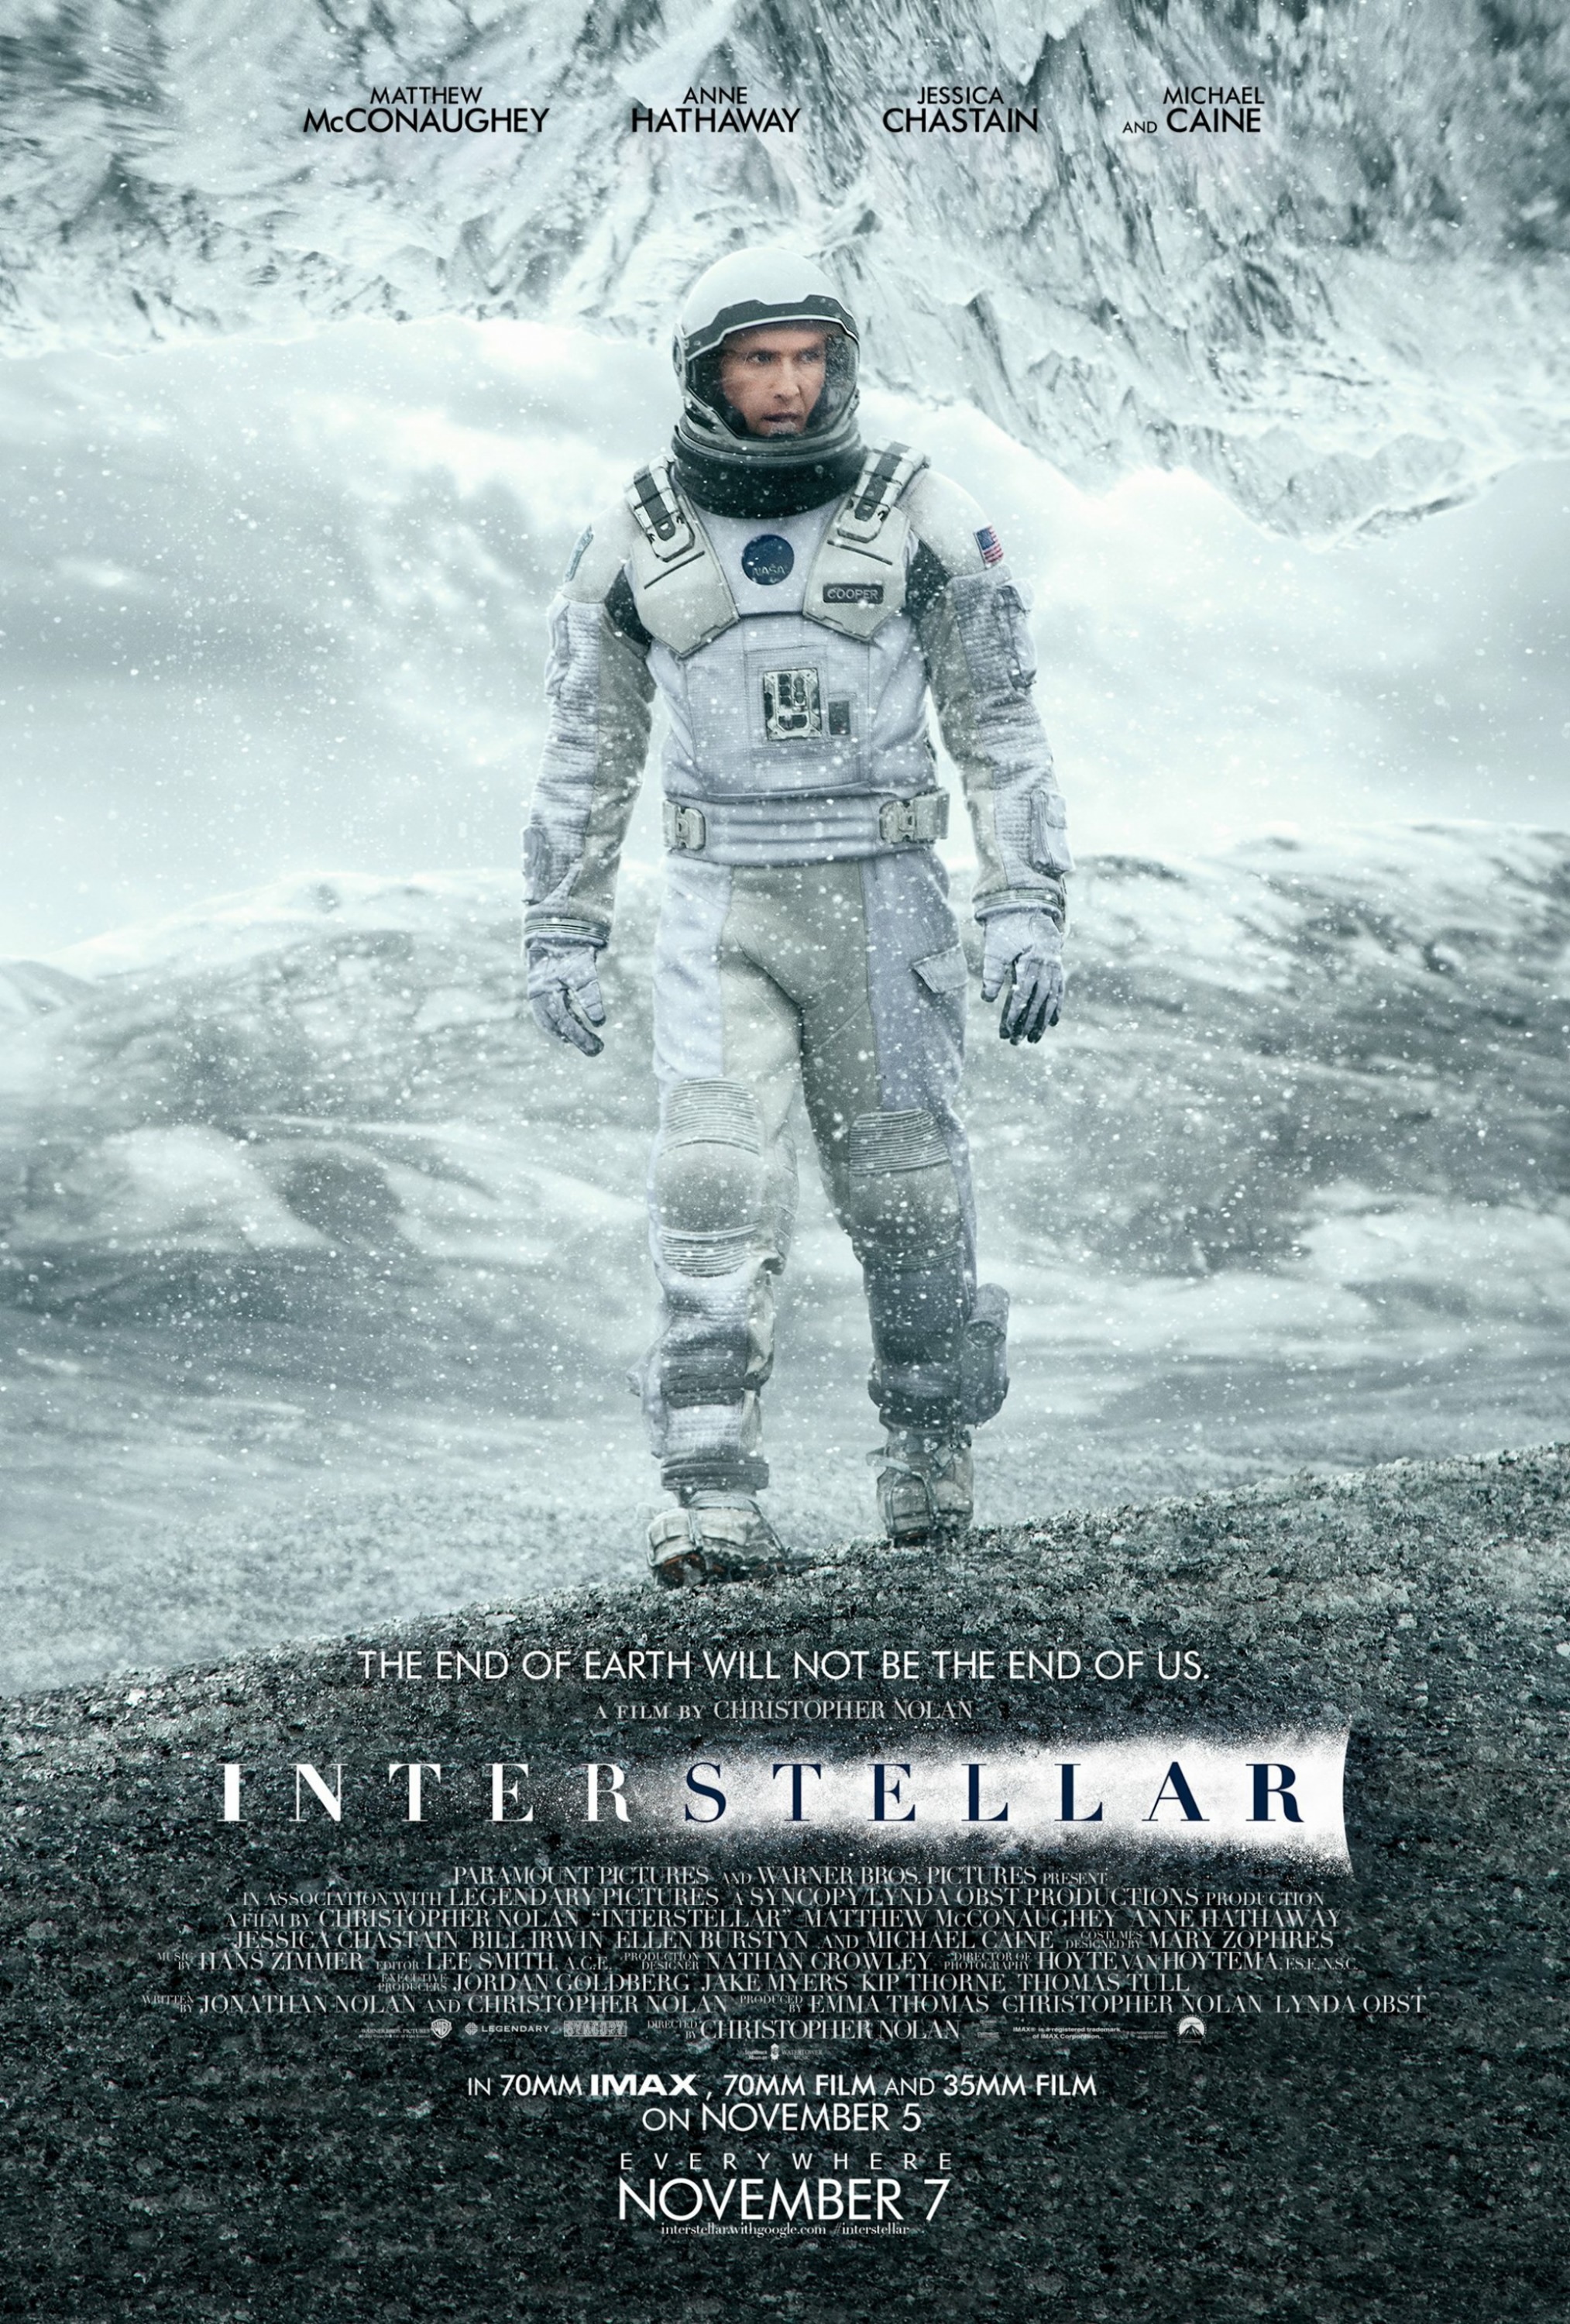 Interstellar (film) | Warner Bros. Entertainment Wiki | Fandom